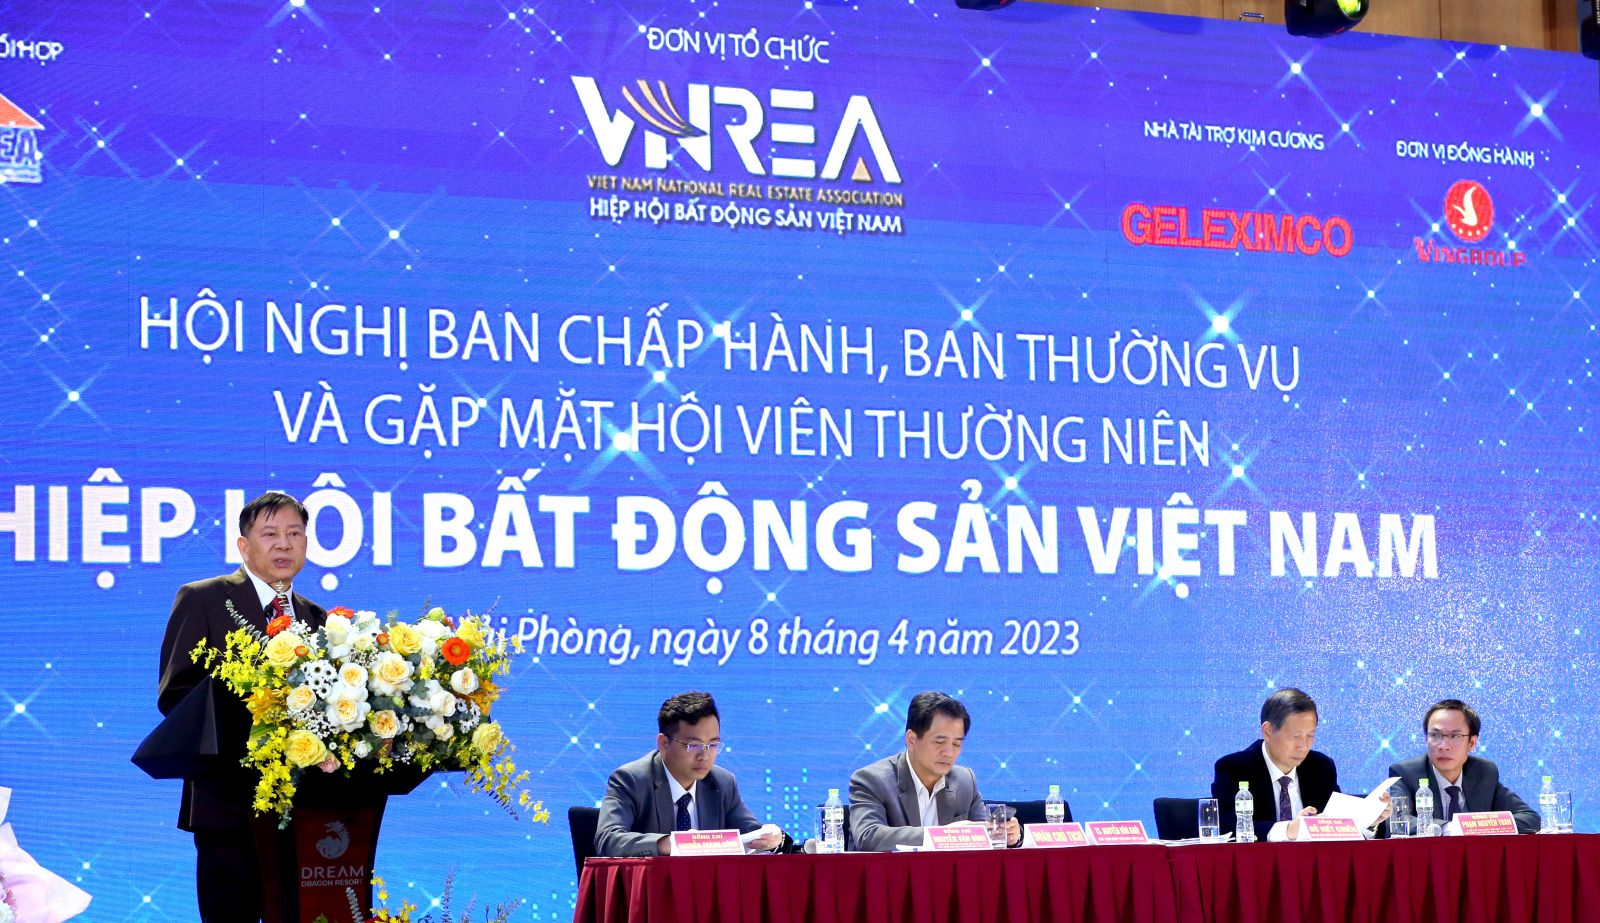 Hội nghị Ban Chấp hành, Ban Thường vụ và gặp mặt Hội viên thường niên 2023 Hiệp hội Bất động sản Việt Nam- Ảnh 3.